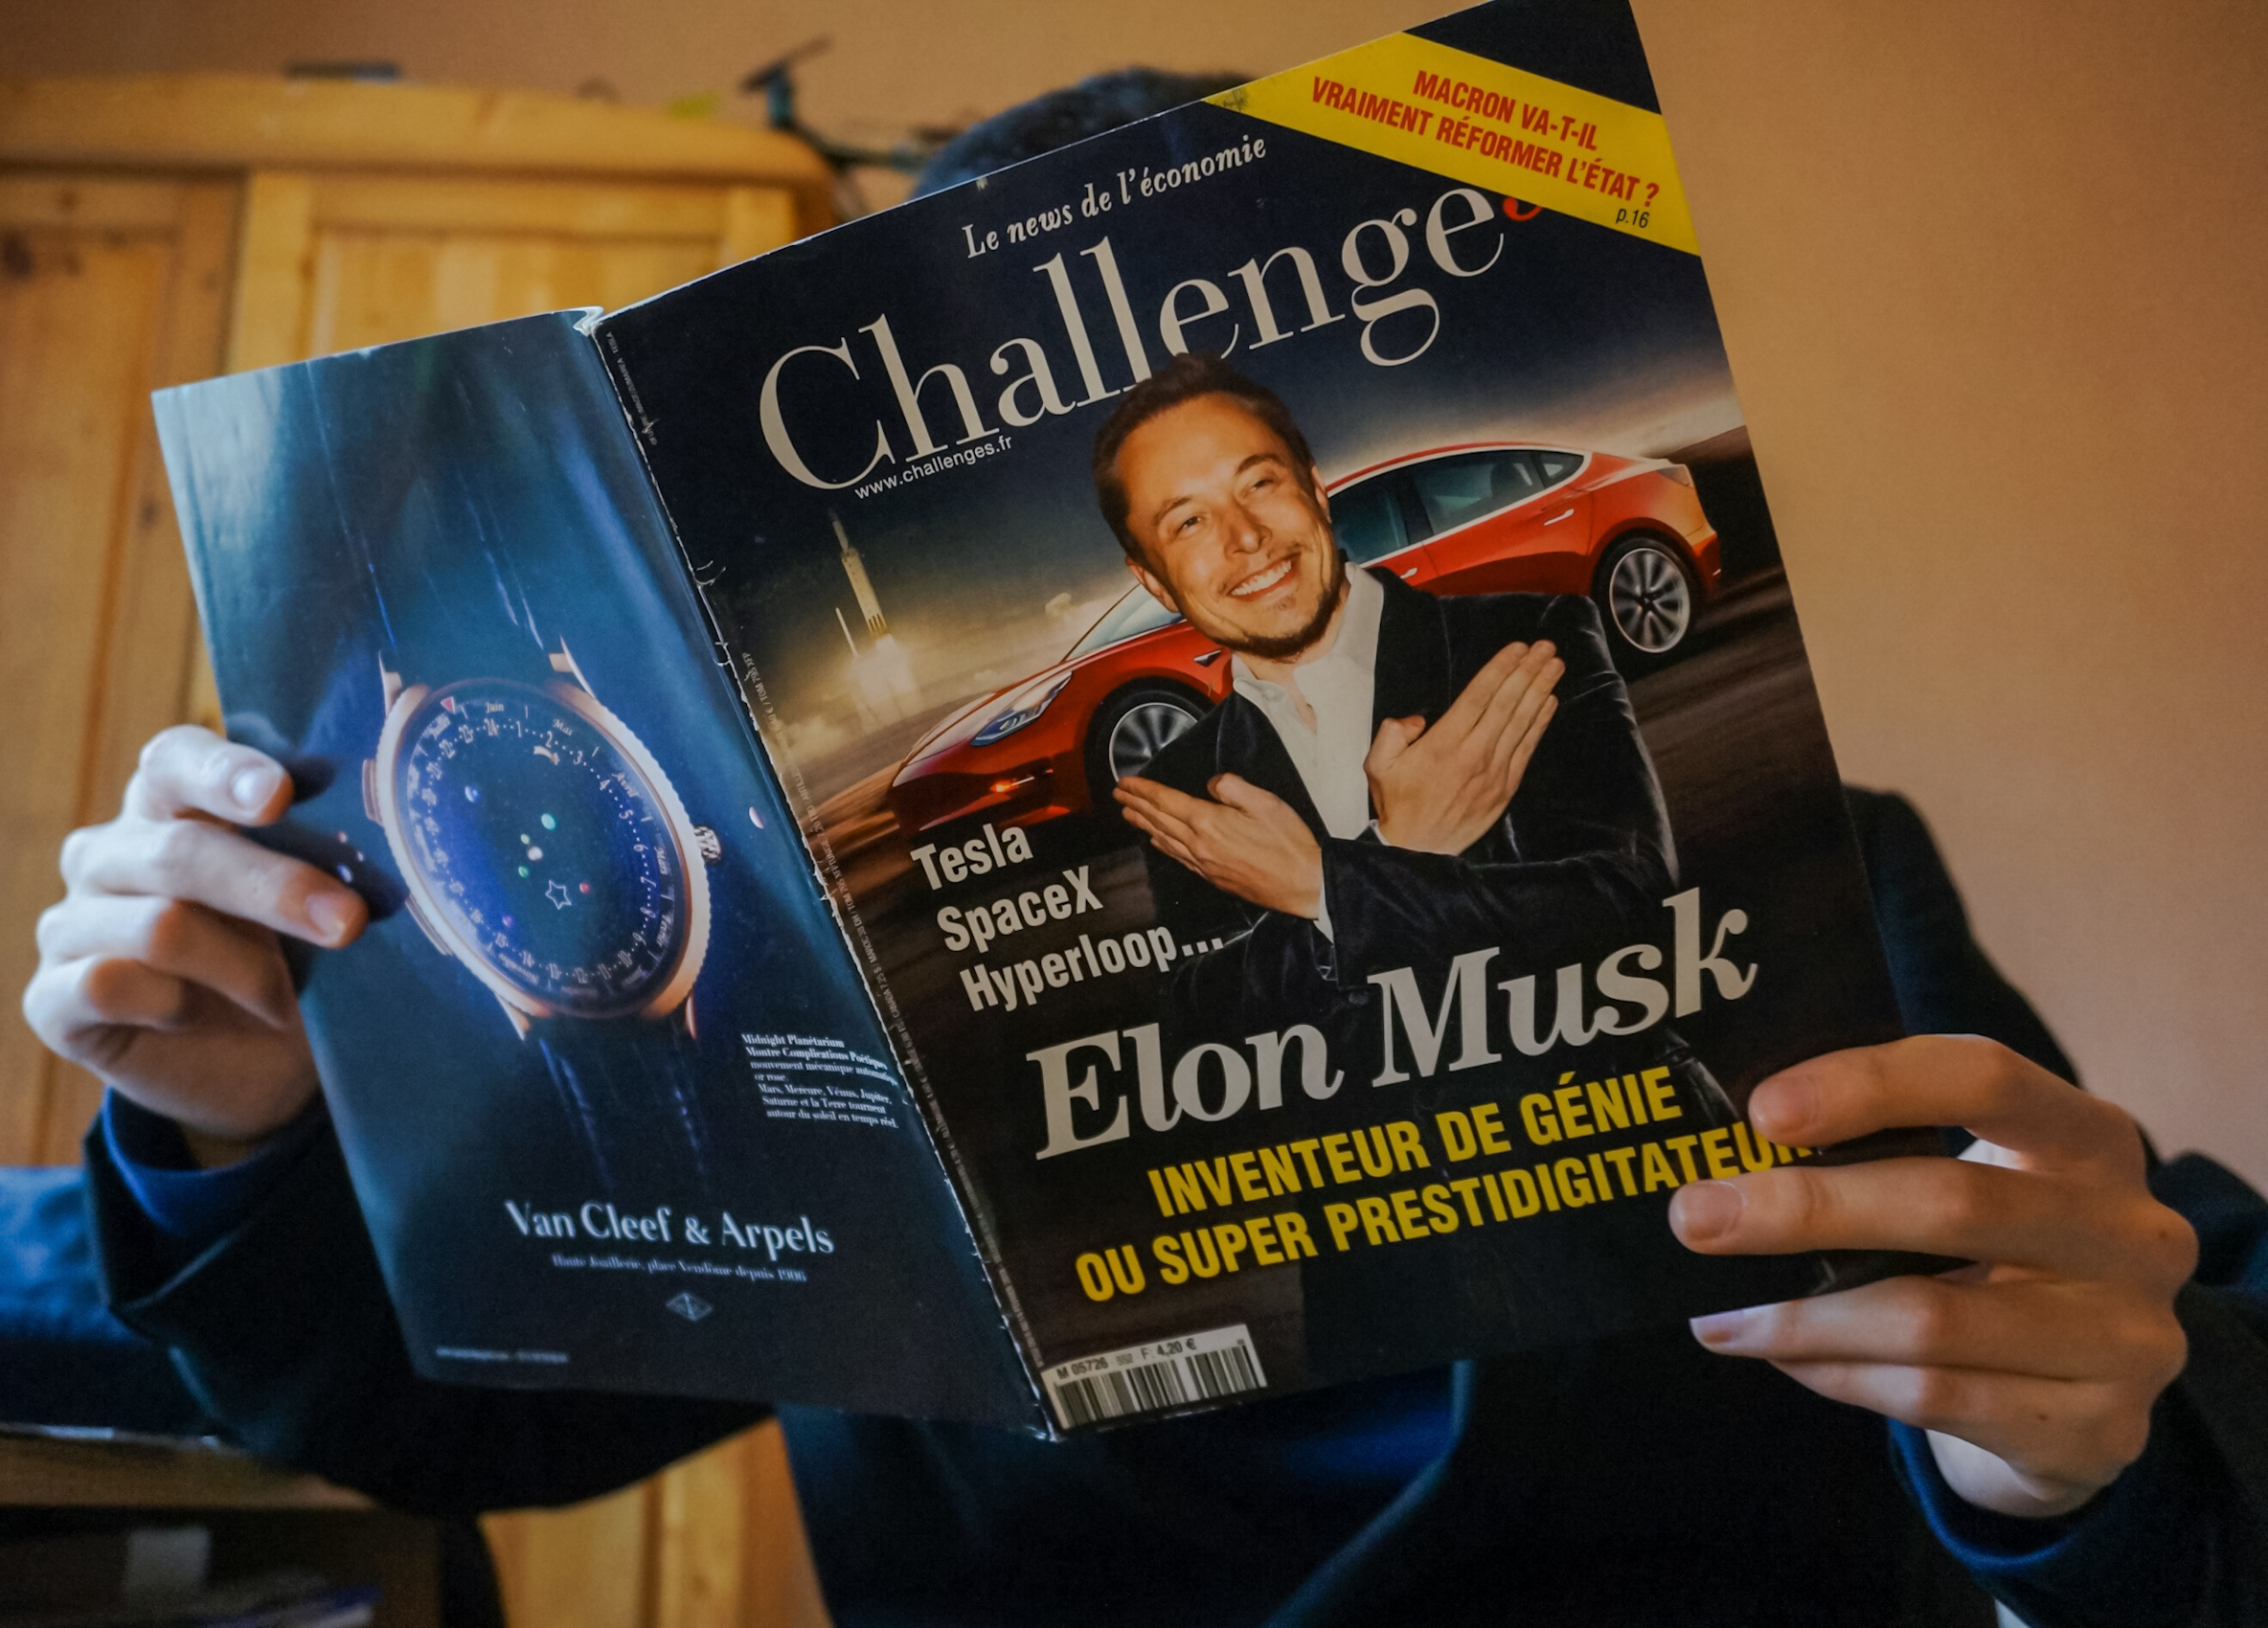 Elon Musk na okładce magazynu, fot. Spech / Shutterstock.com